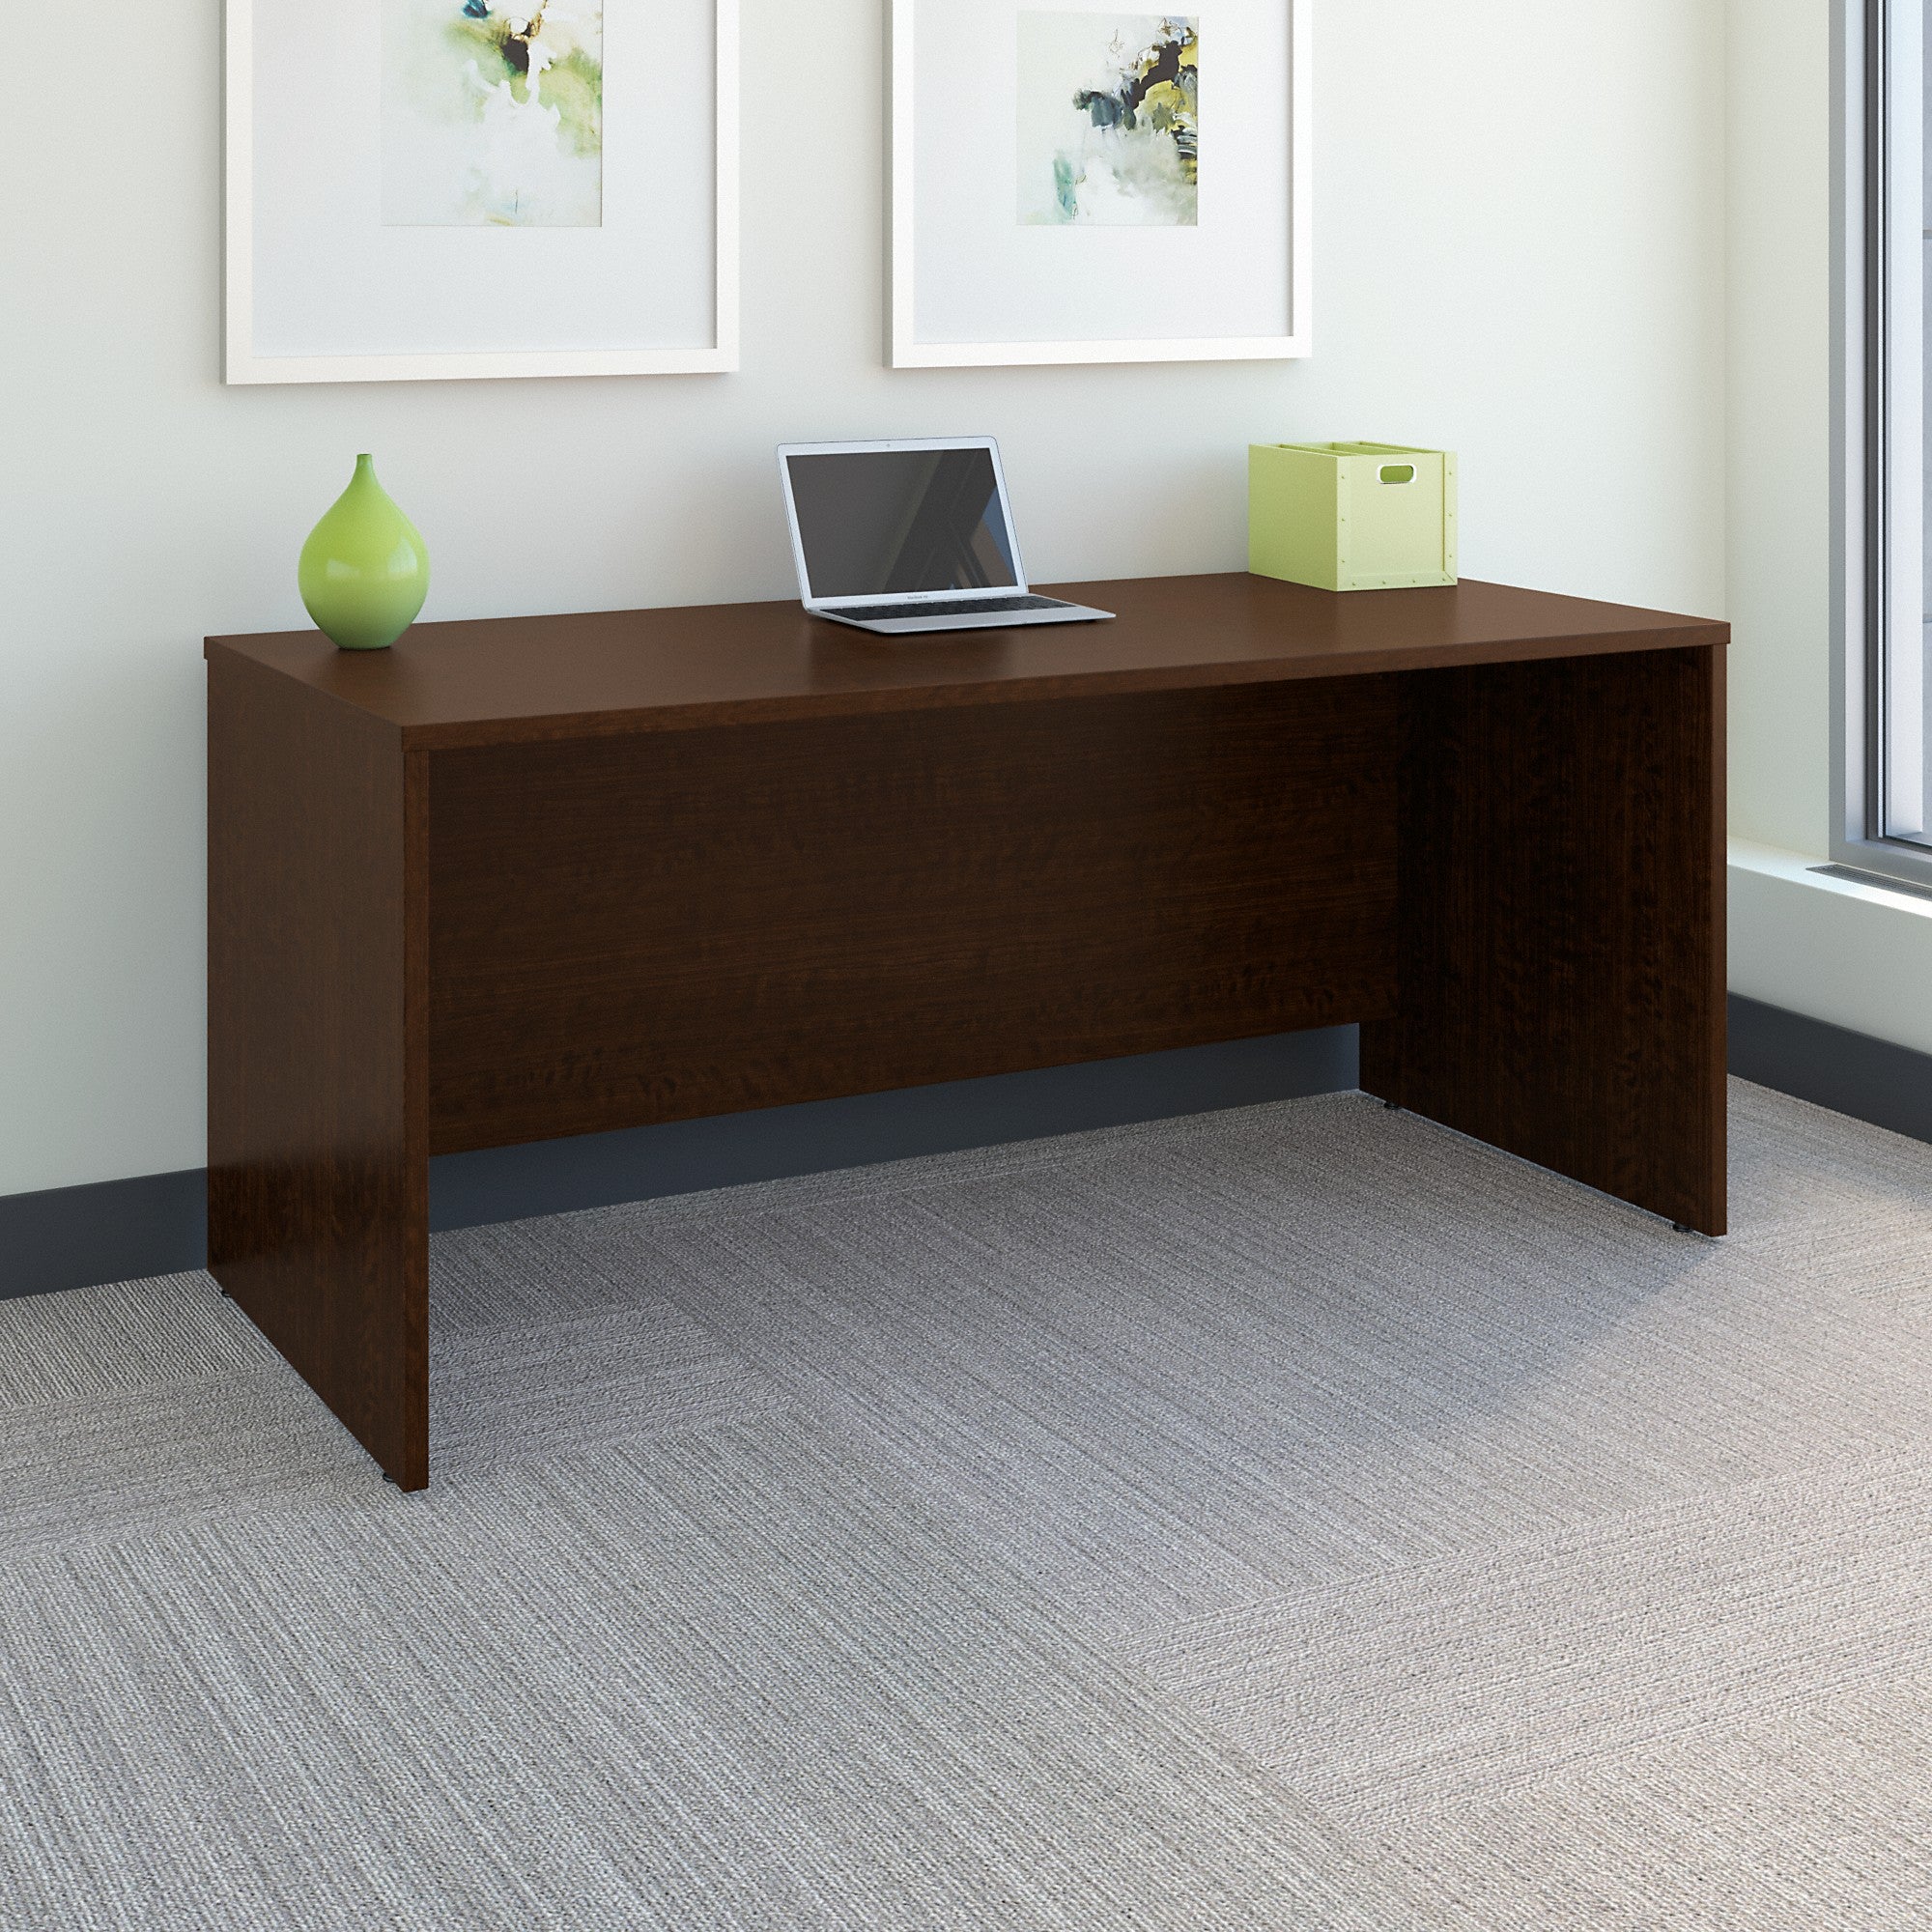 Bush Business Furniture Series C 66W x 30D Office Desk